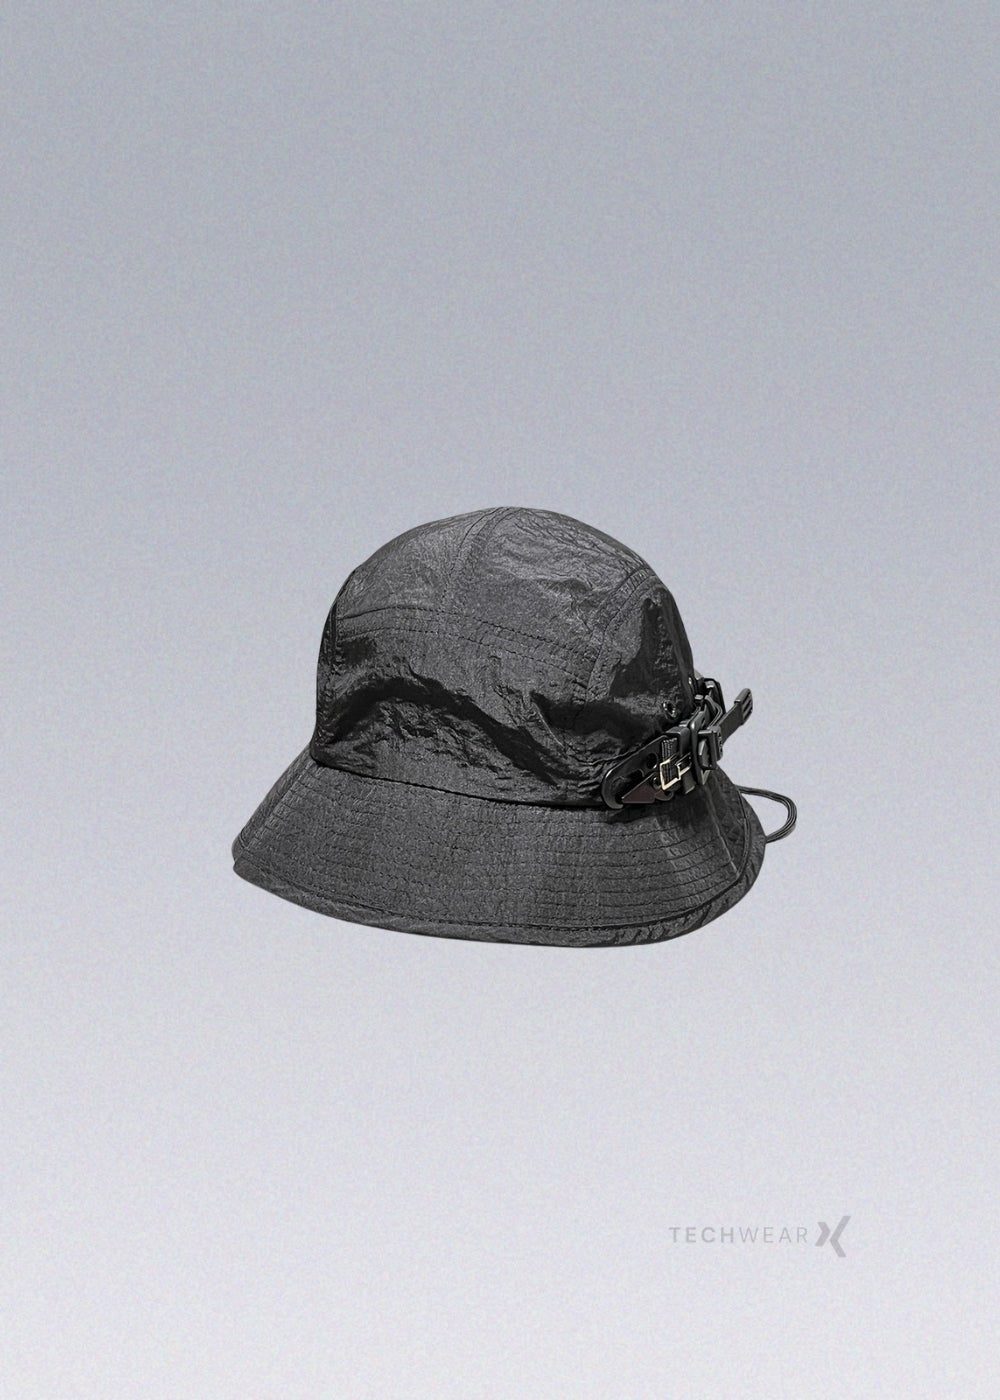 Techwear Finshing Hat